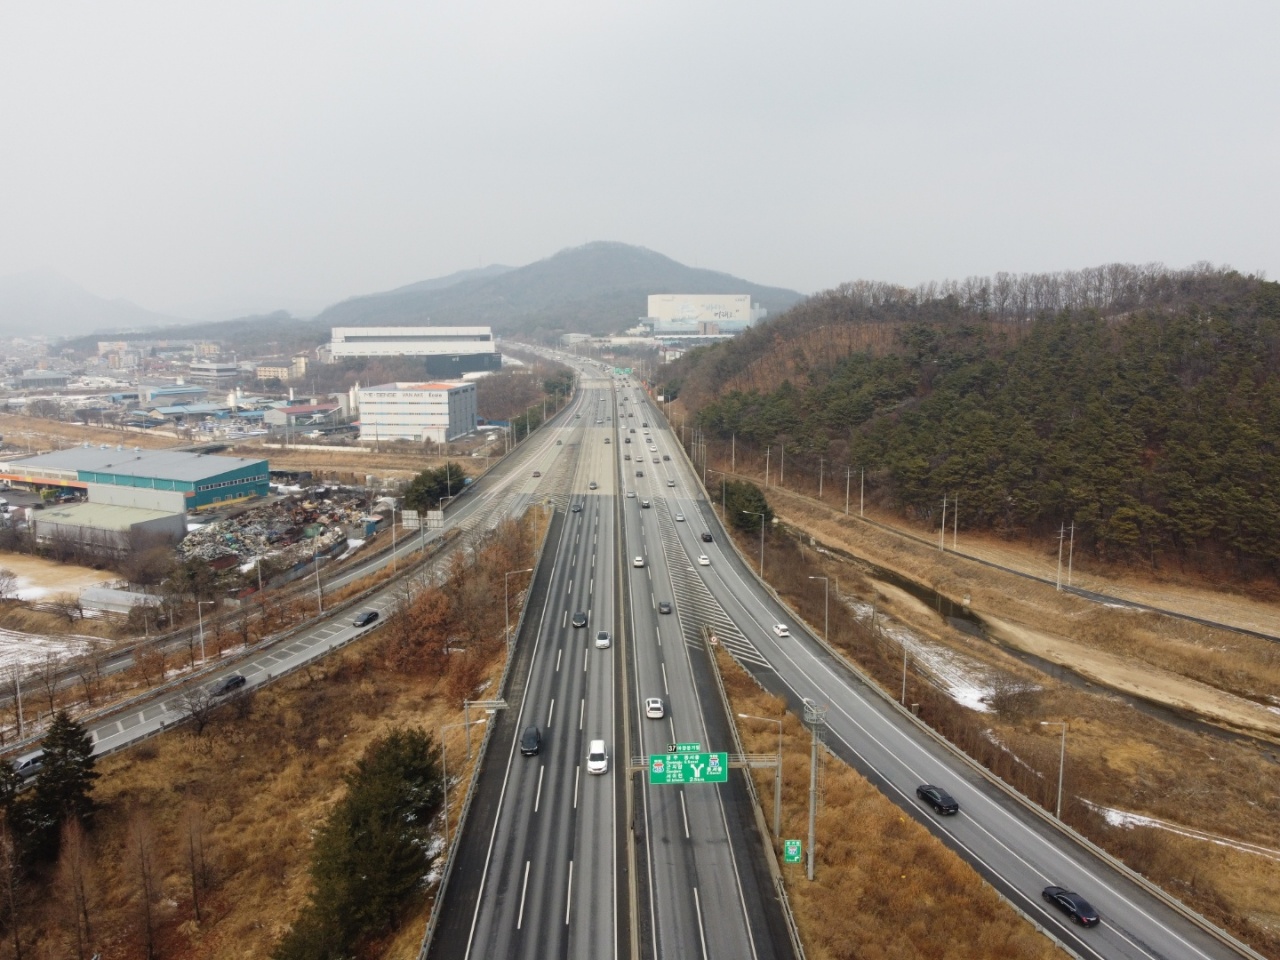 설날인 1일 오후 2시께 중부고속도로 호법분기점 인근으로 우측이 서울방향, 아직까지는 정체는 없는 상태다. (사진=허찬회 기자)